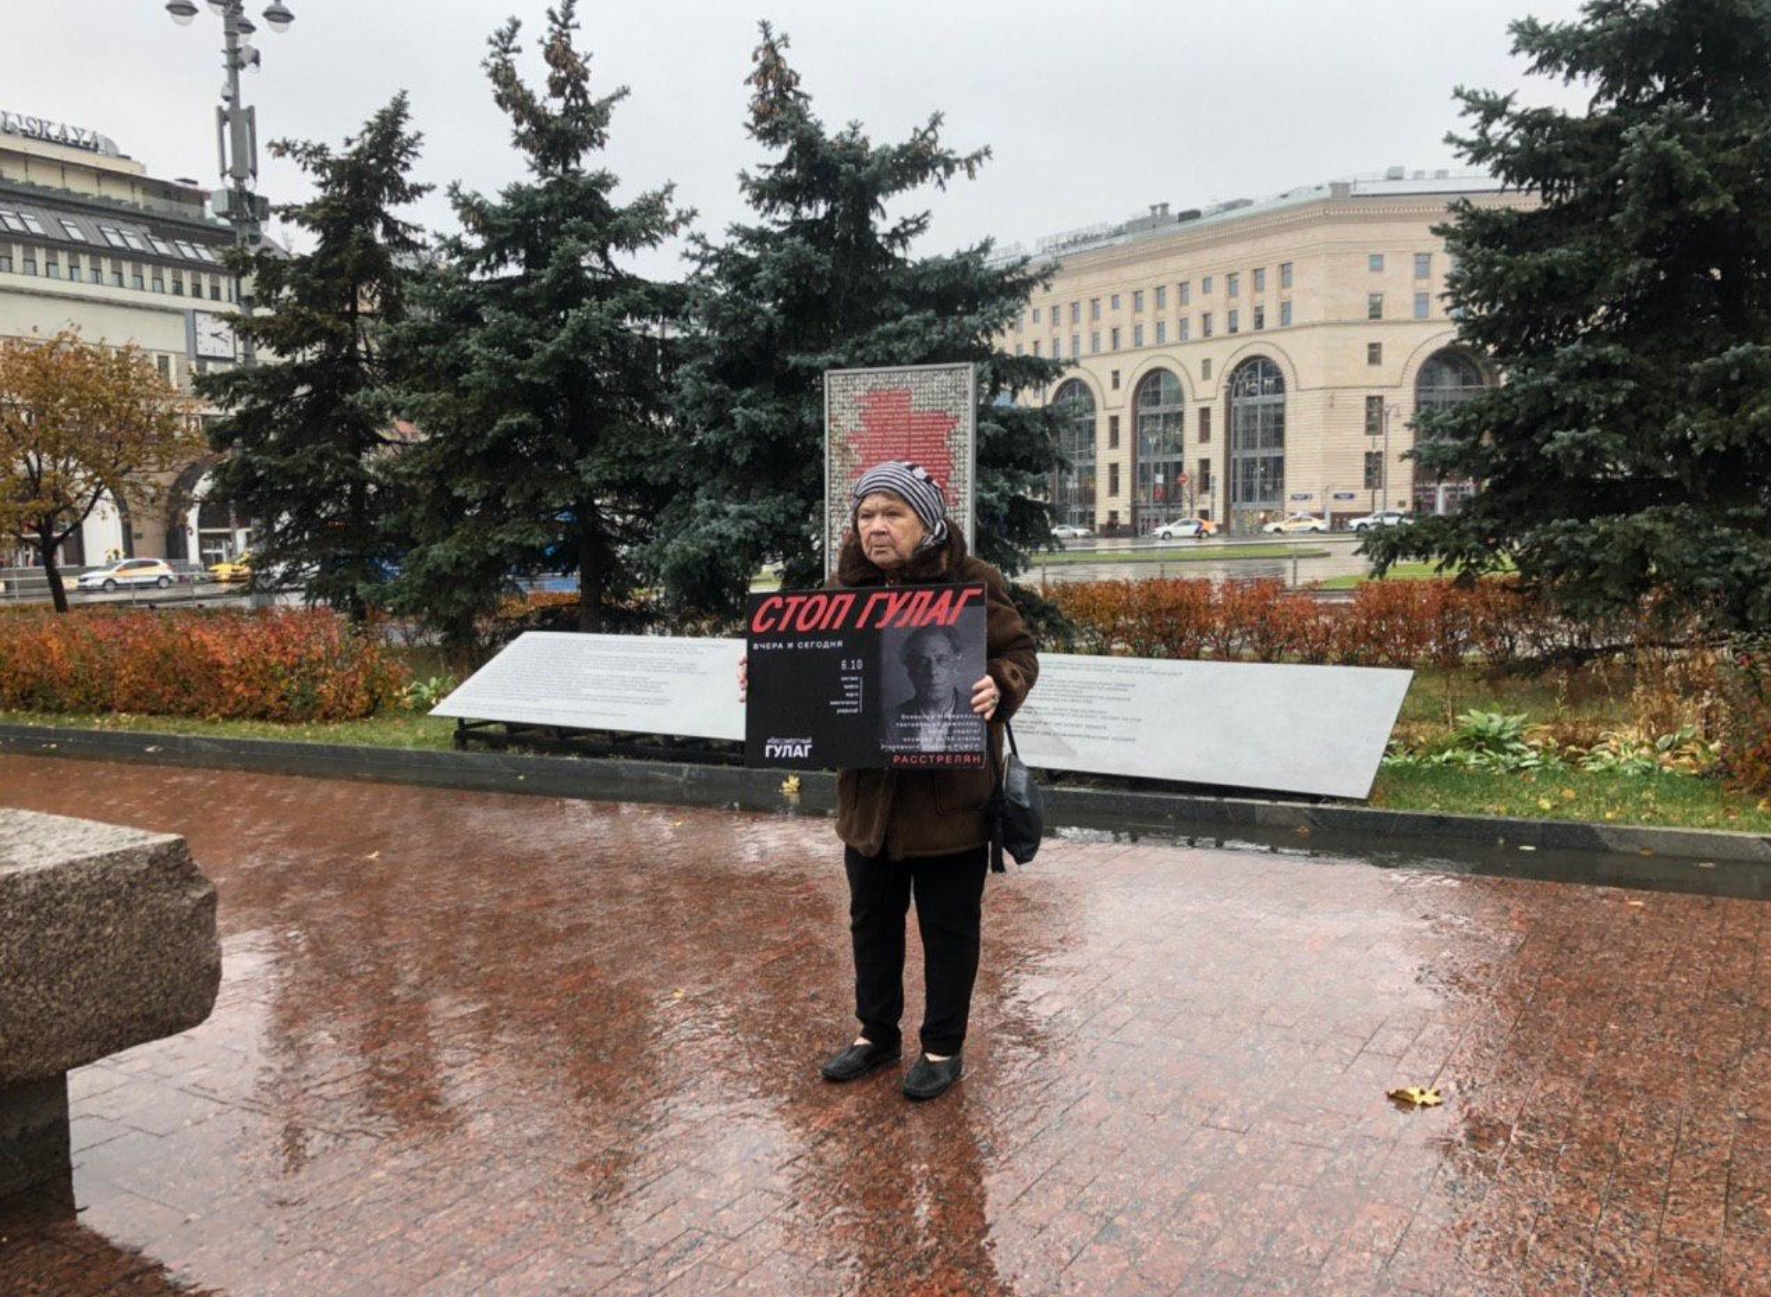 Мариэтта Чудакова в одиночном пикете на Лубянской площади. Фото: твиттер МБХ Медиа